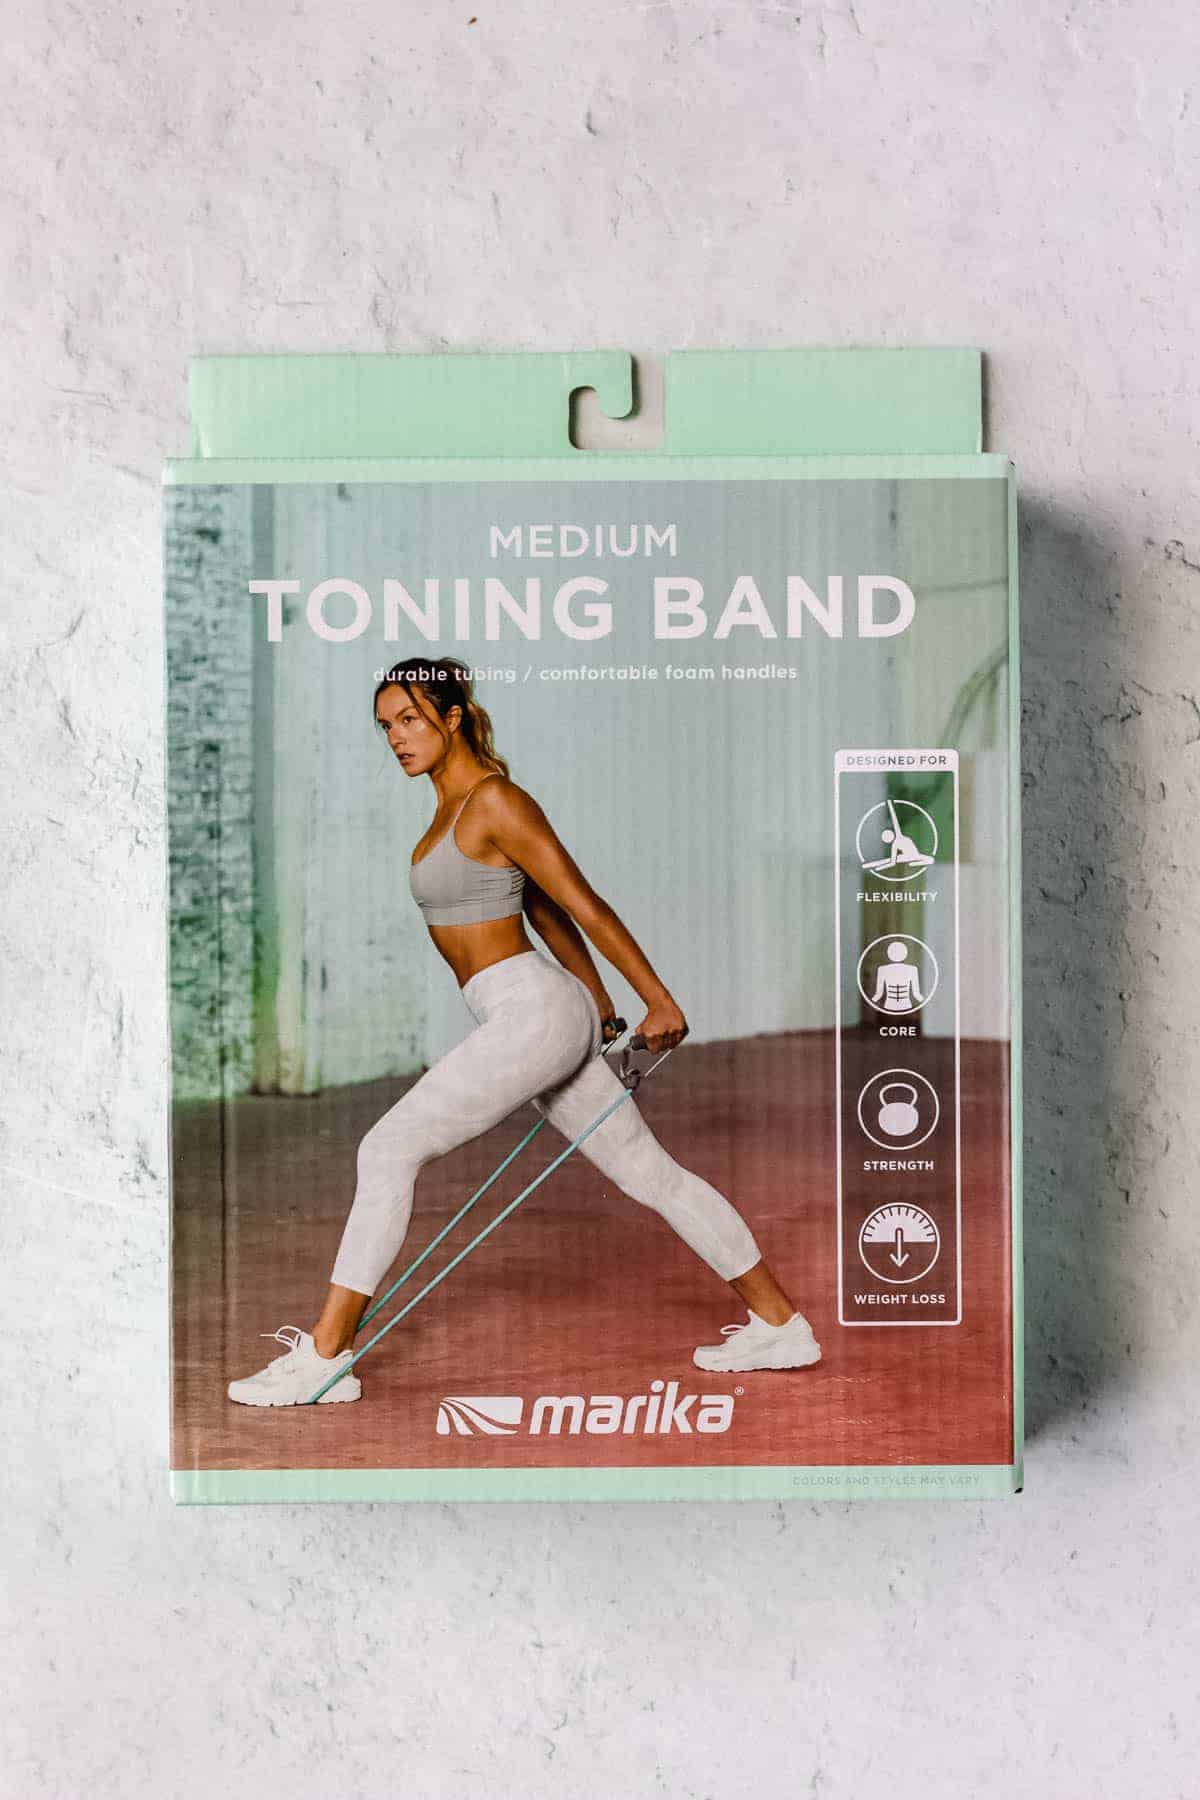 Marika medium toning band package on a white background